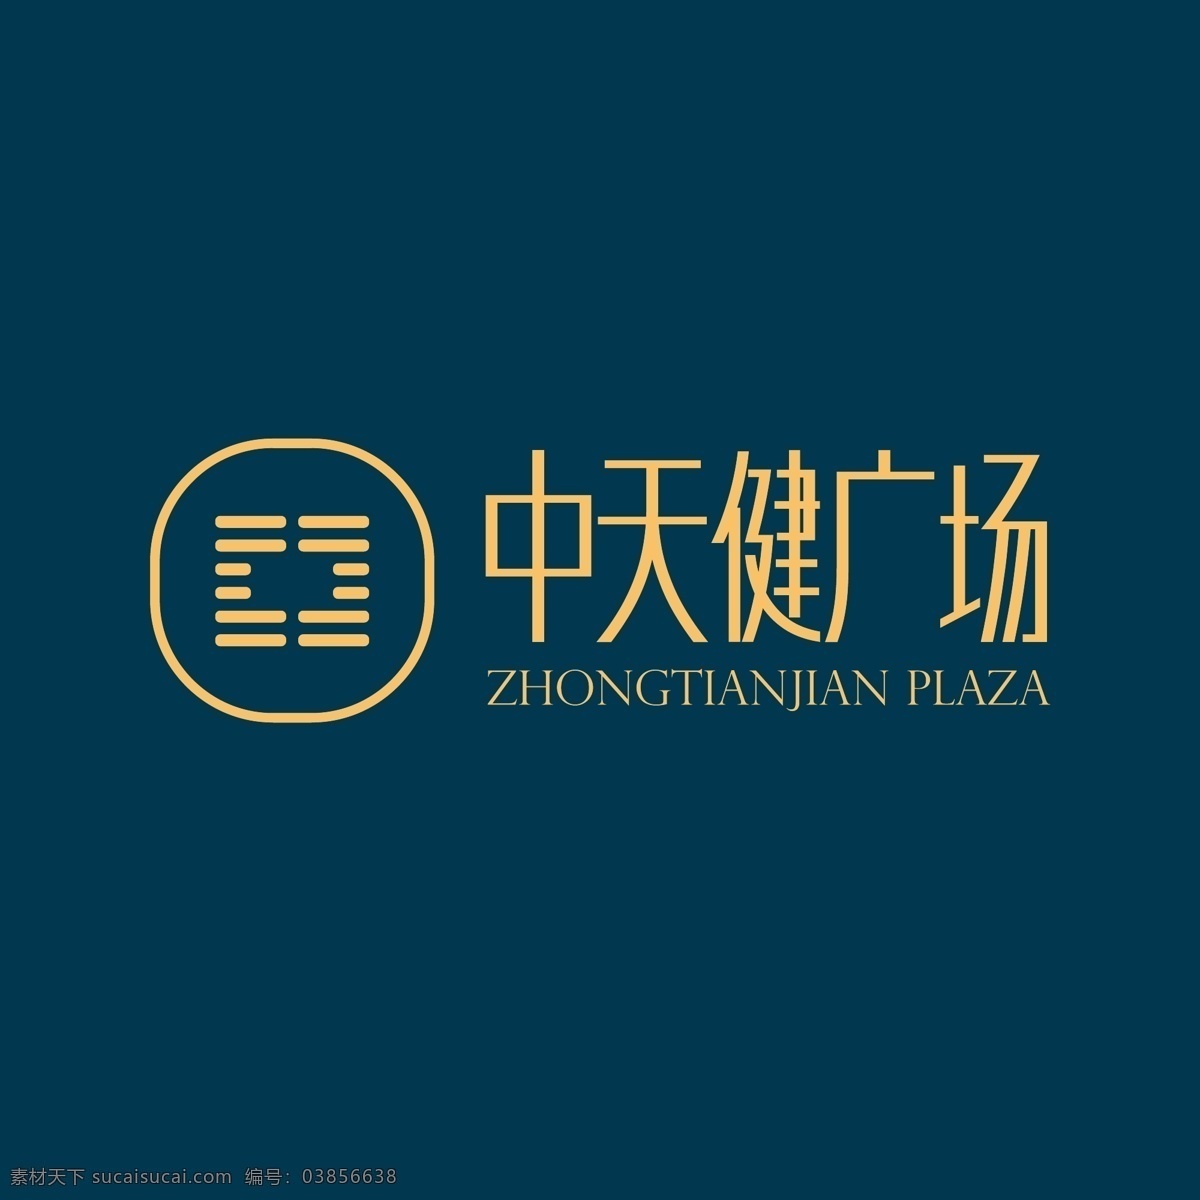 中天 健 广场 logo 中天健广场